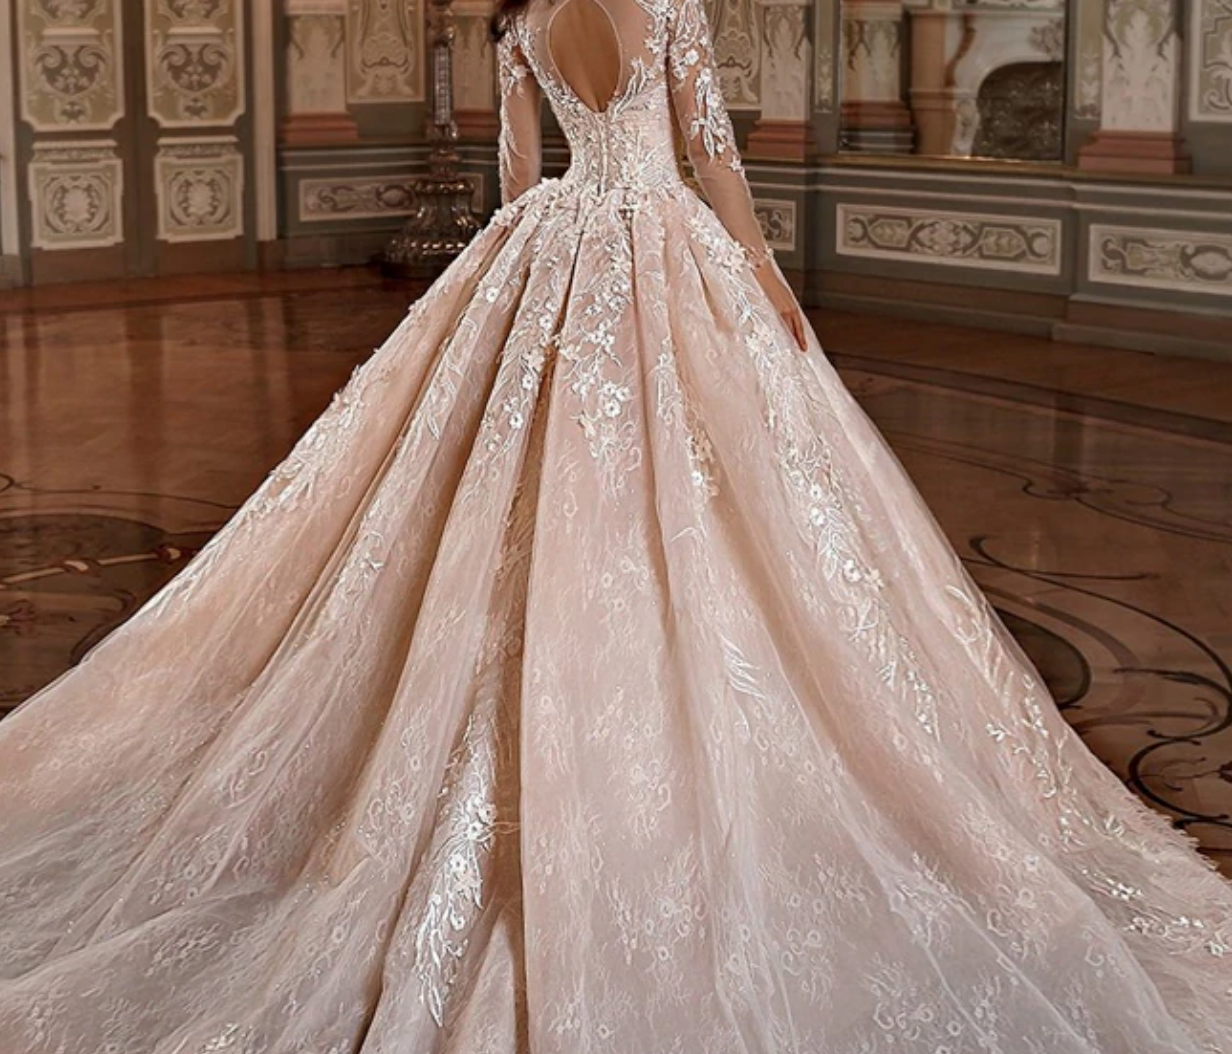 Full A-line 3 Hoop Floor-Length Bridal Dress Gown Slip Petticoat Off-White/1003-3  – Fabrichittite